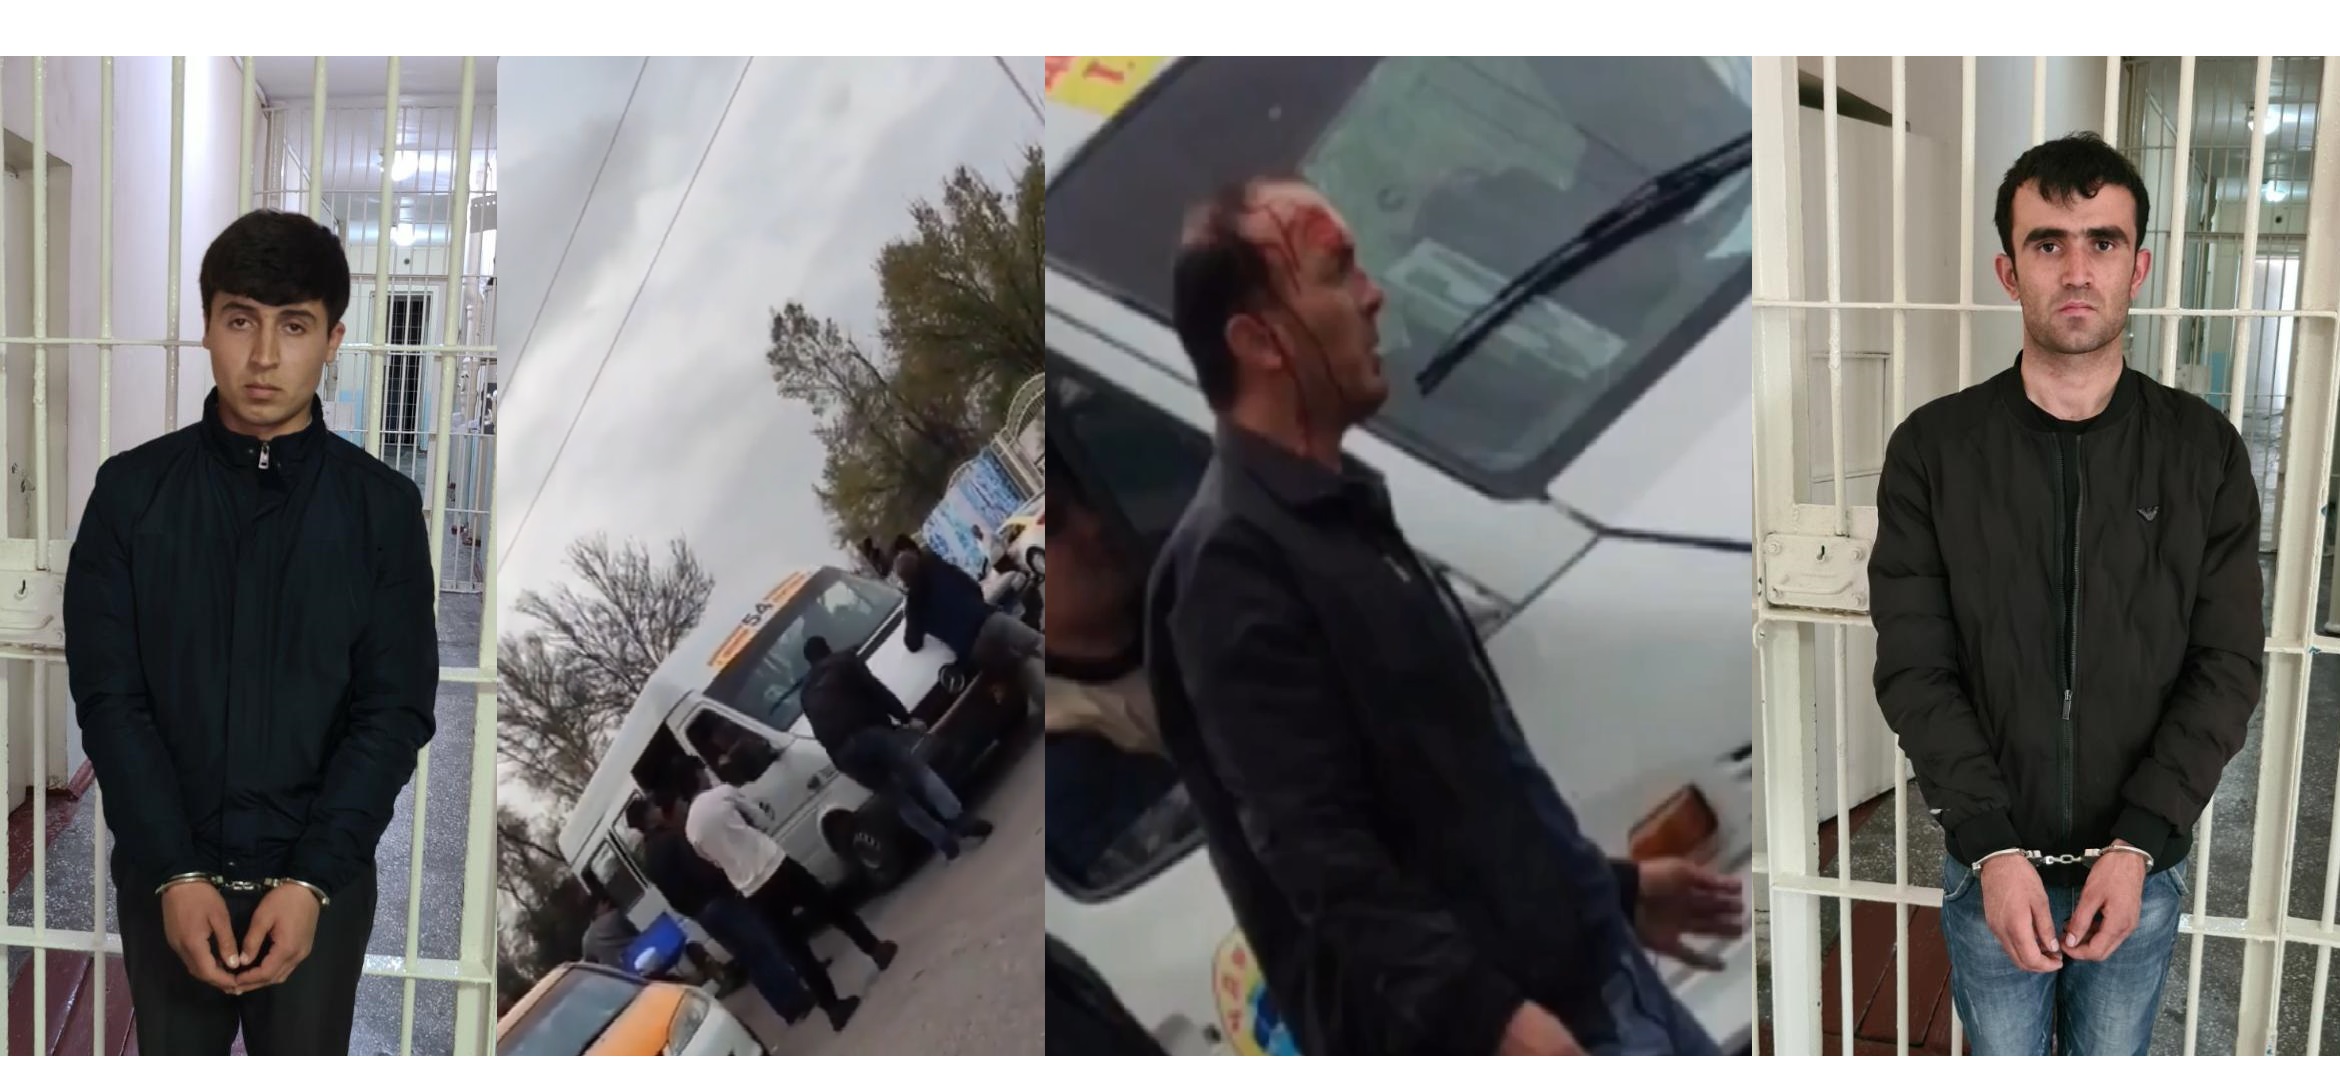 Не помогли слова в ход пошли кулаки! Задержание водителя за нарушение общественного порядка (видео)